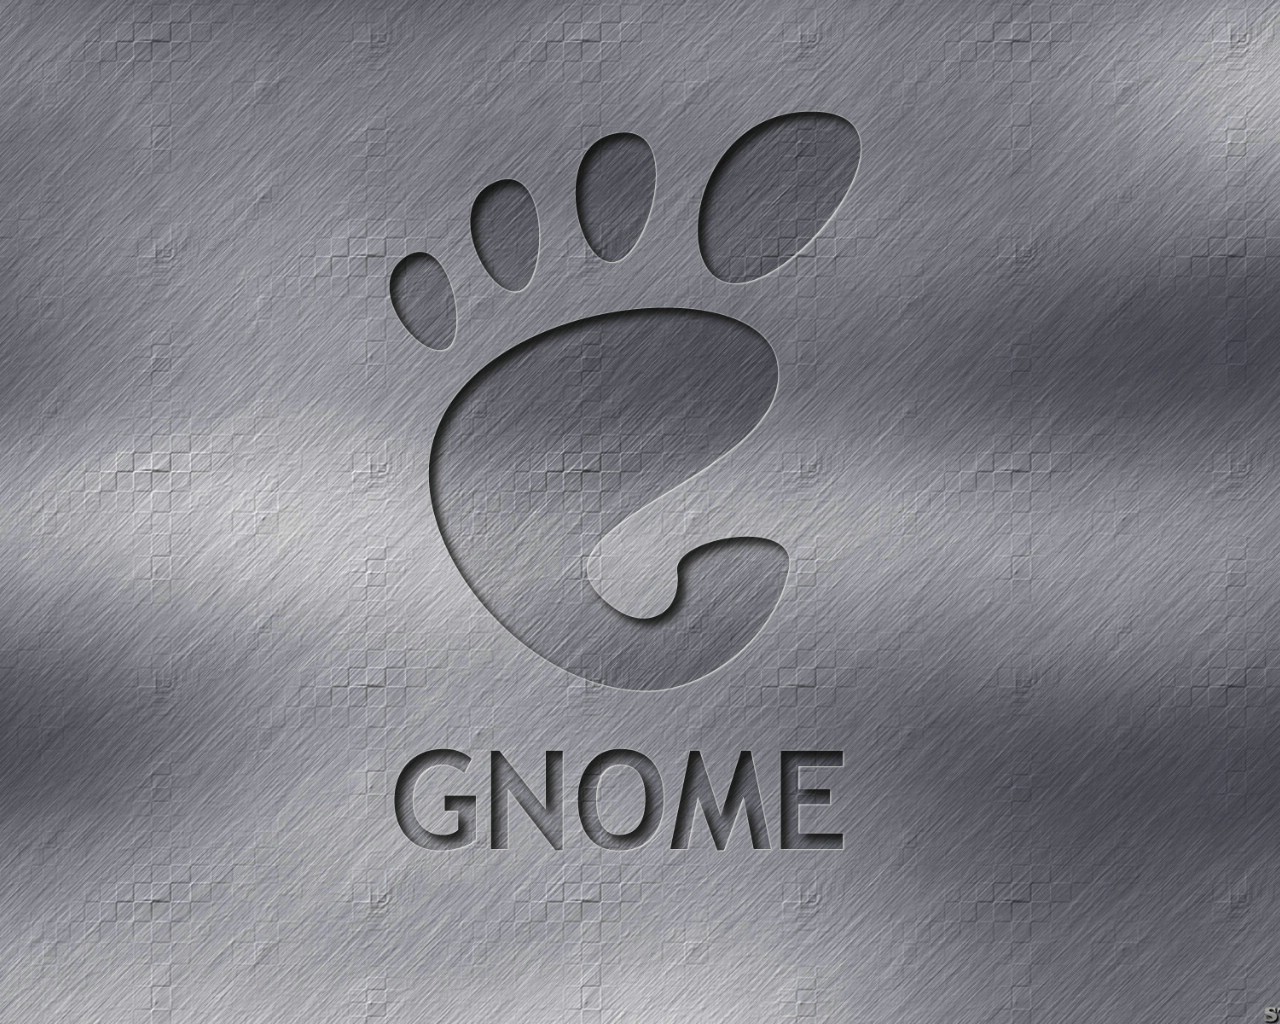 壁纸1280x10241600Gnome 1 6壁纸 Gnome 1600Gnome 第一辑壁纸 Gnome 1600Gnome 第一辑图片 Gnome 1600Gnome 第一辑素材 系统壁纸 系统图库 系统图片素材桌面壁纸